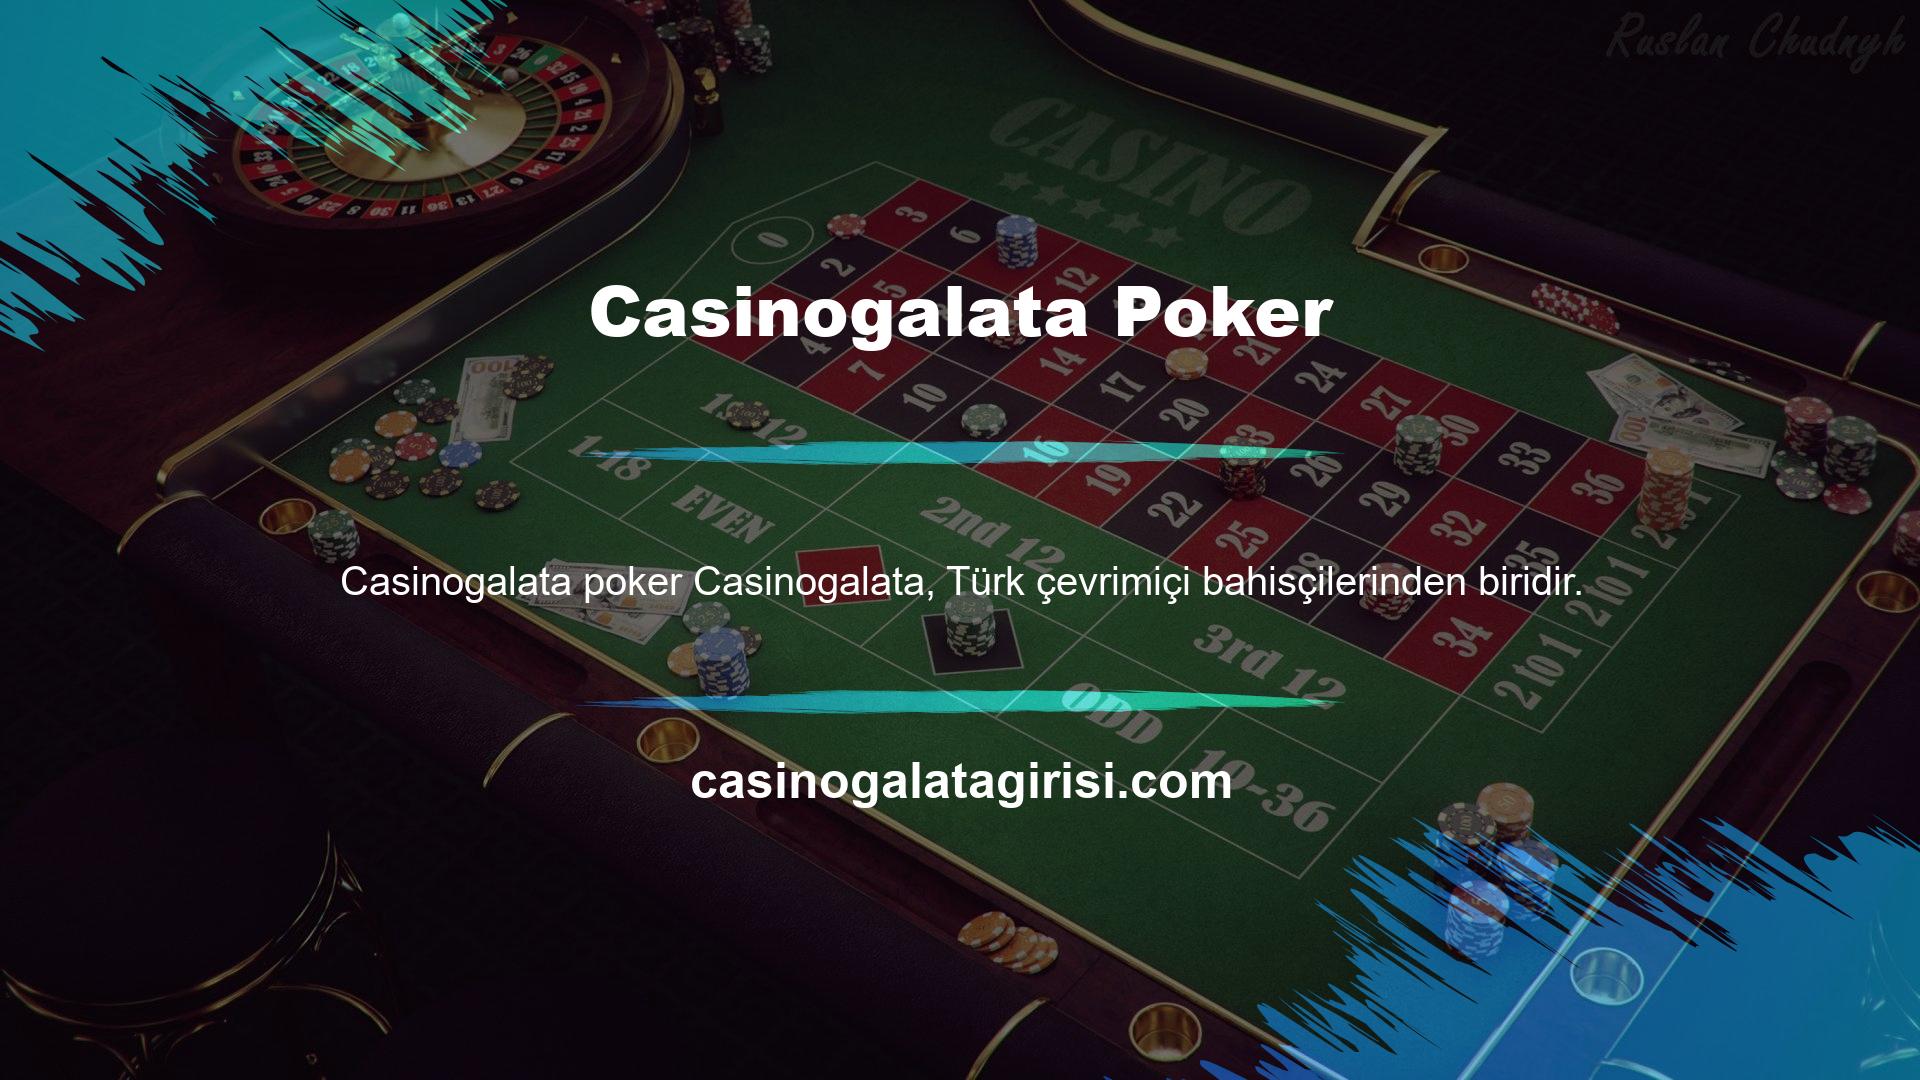 Casinogalata, poker ile ilgilenen herkesin ihtiyaç duyduğu ve takdir ettiği ülkemiz şirketlerinden biridir